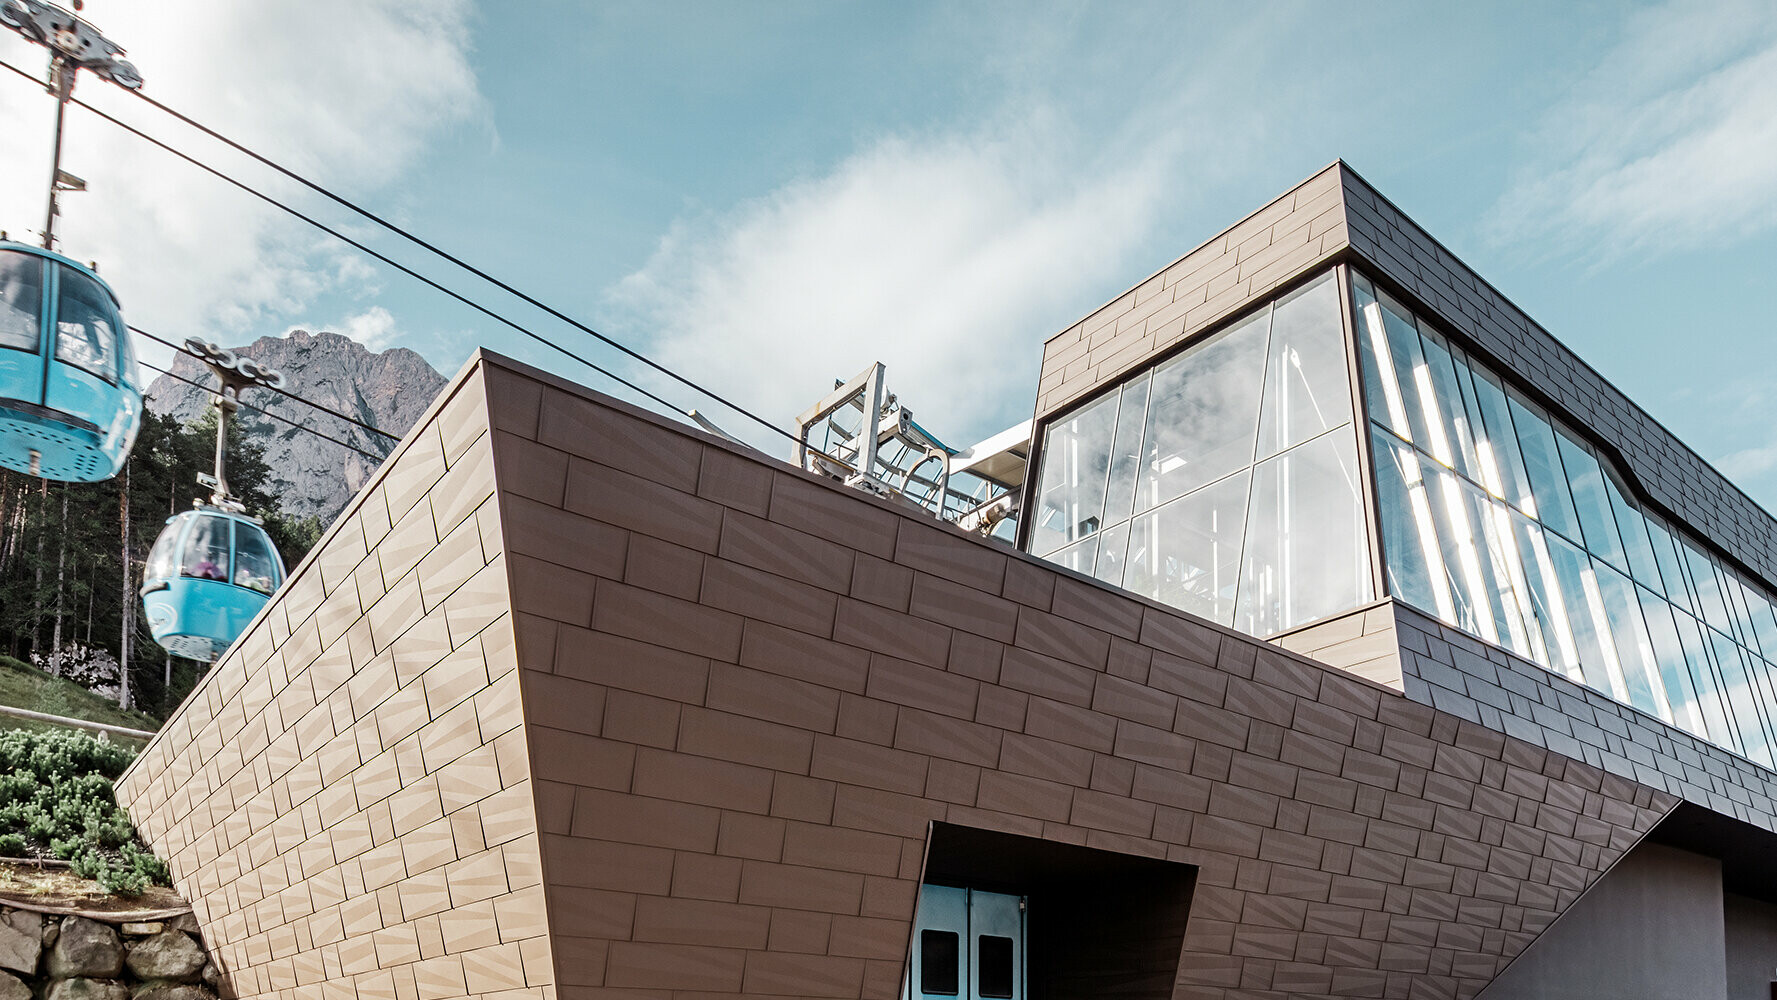 Talstation einer Umlaufbahn in Südtirol mit moderner Dach- und Fassadenverkleidung von PREFA in der Farbe Braun.